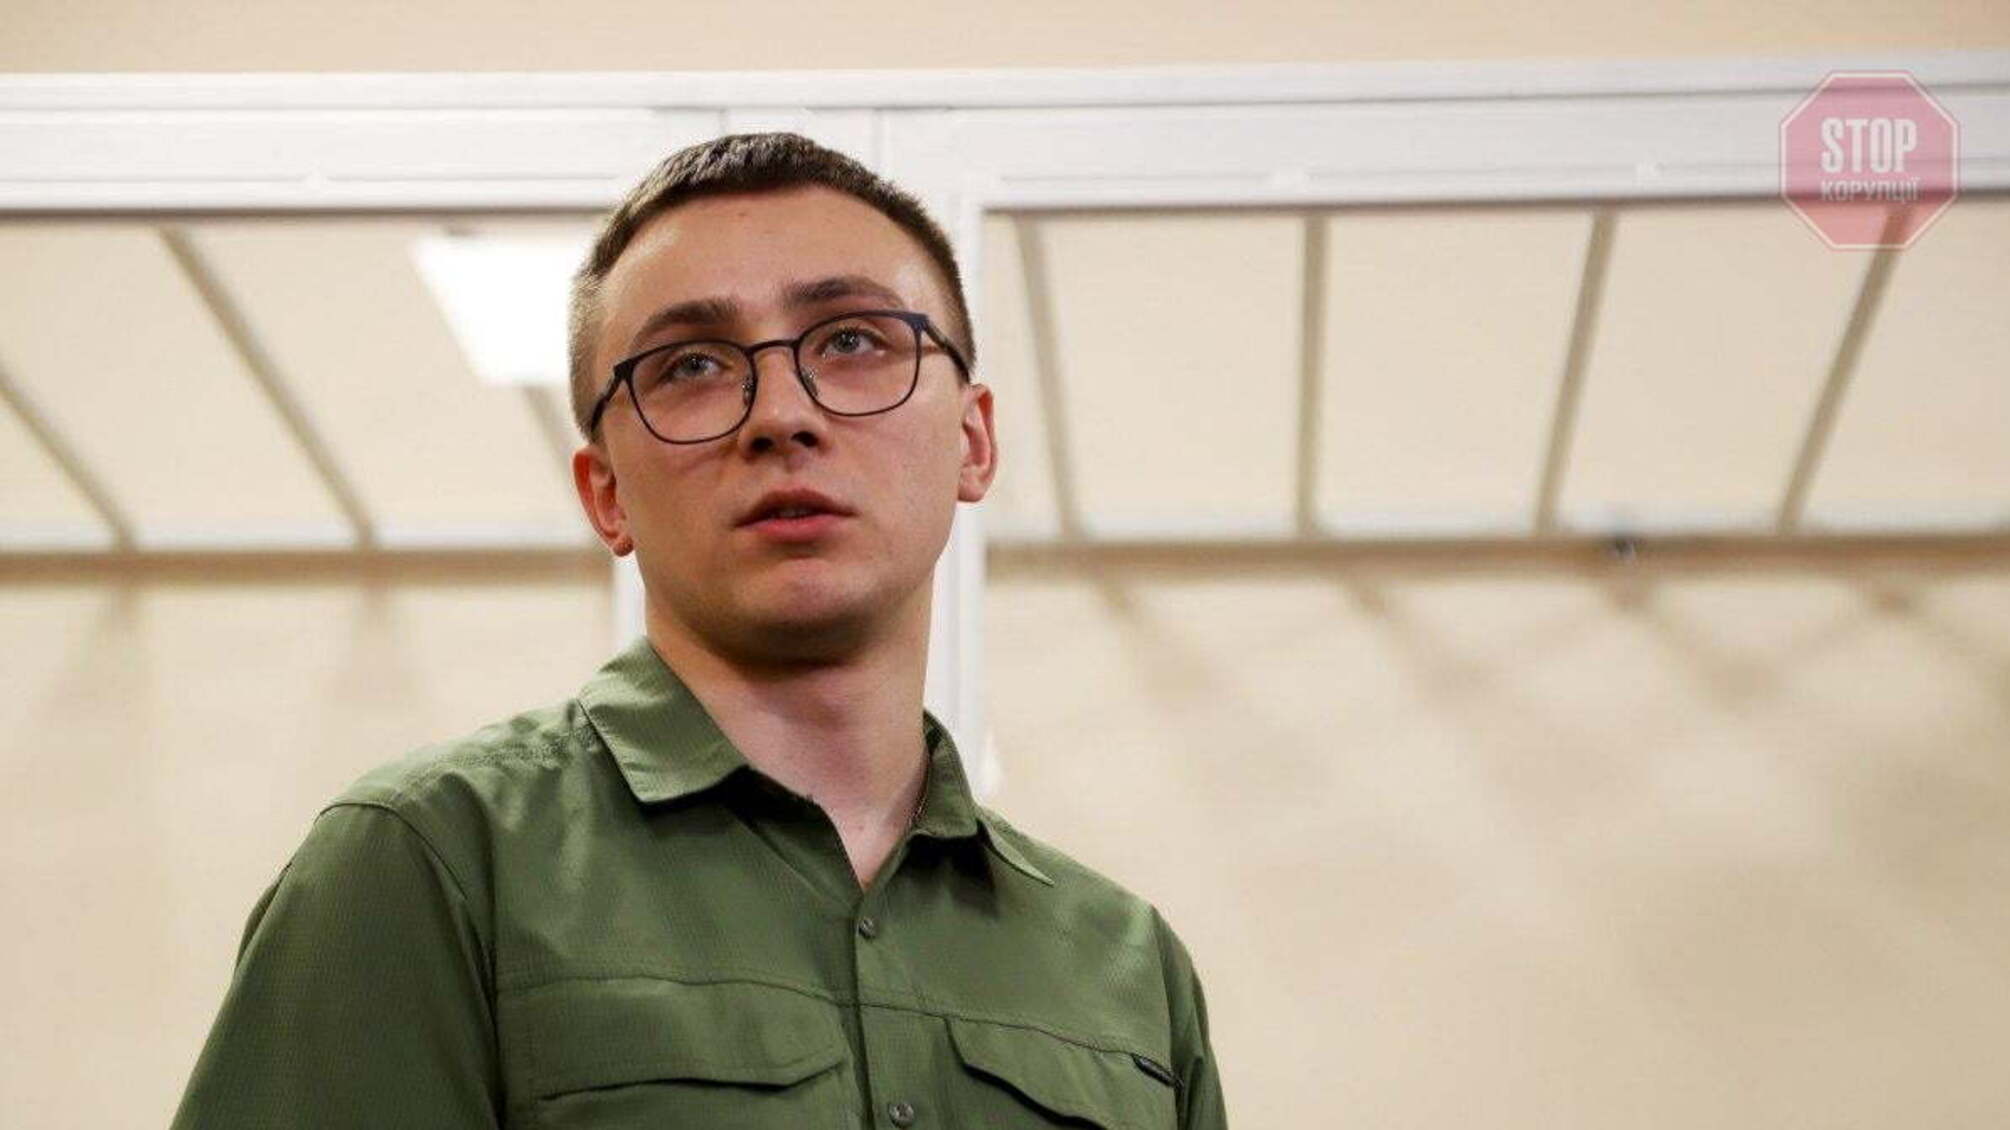 Апеляційний суд в Одесі звільнив активіста Стерненка з під варти 